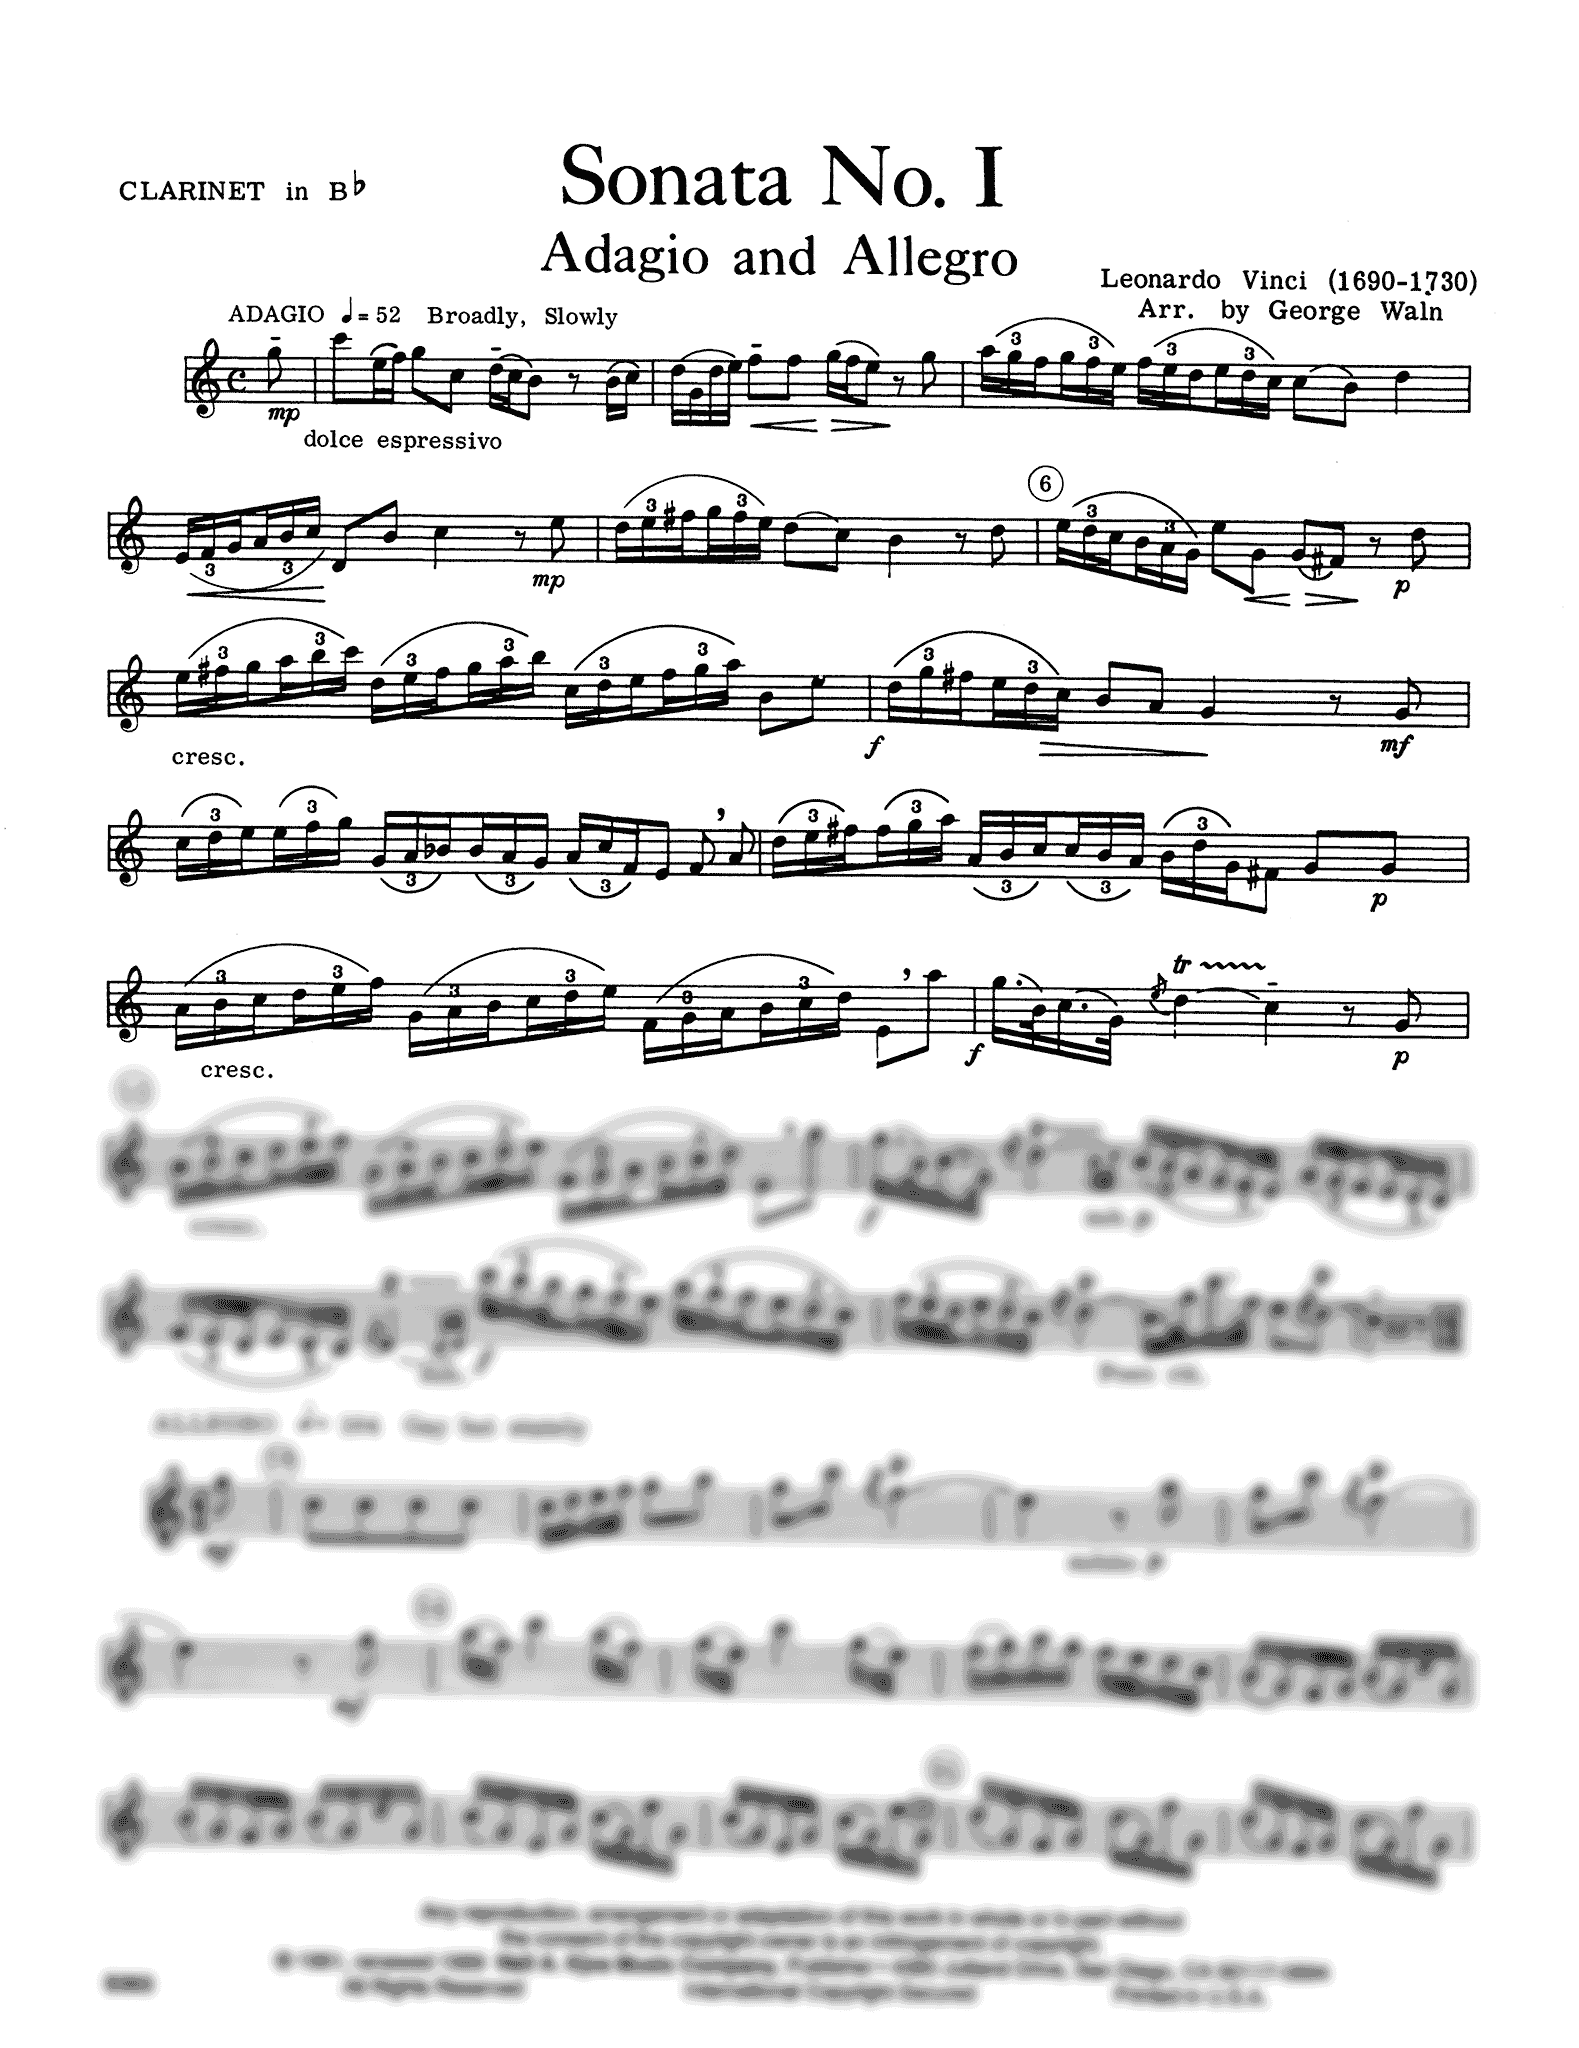 Adagio & Allegro, from Sonata in D Major Clarinet part